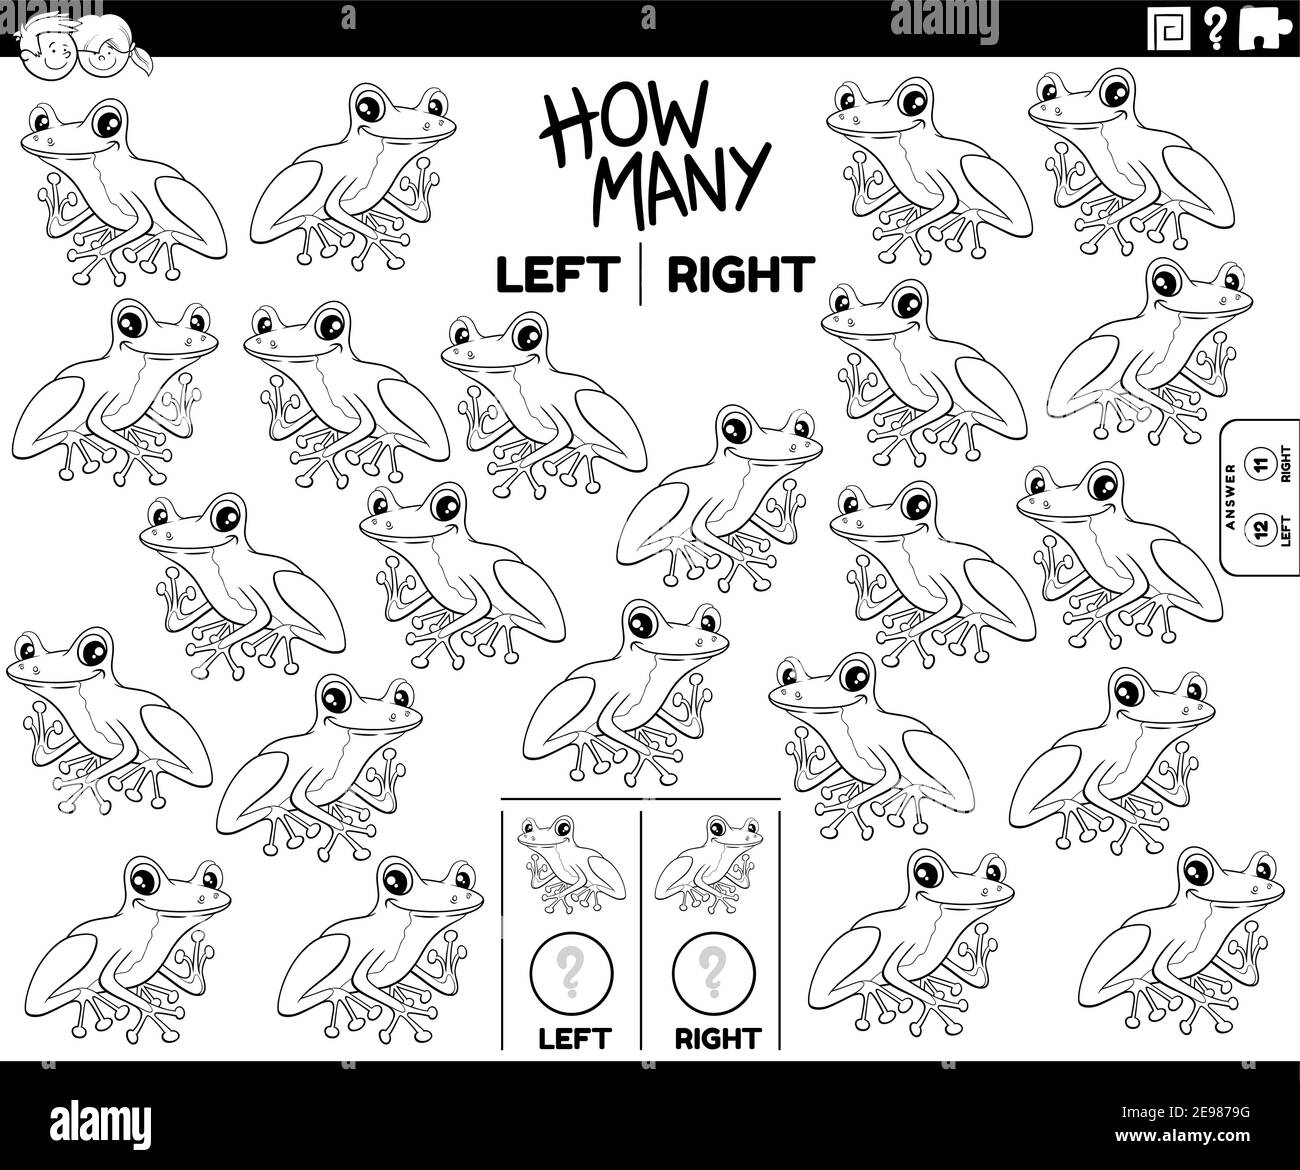 Illustration de dessin animé noir et blanc de la tâche éducative de compter images orientées à gauche et à droite de l'arbre de caractère animal grenouille page de livre de coloriage Illustration de Vecteur